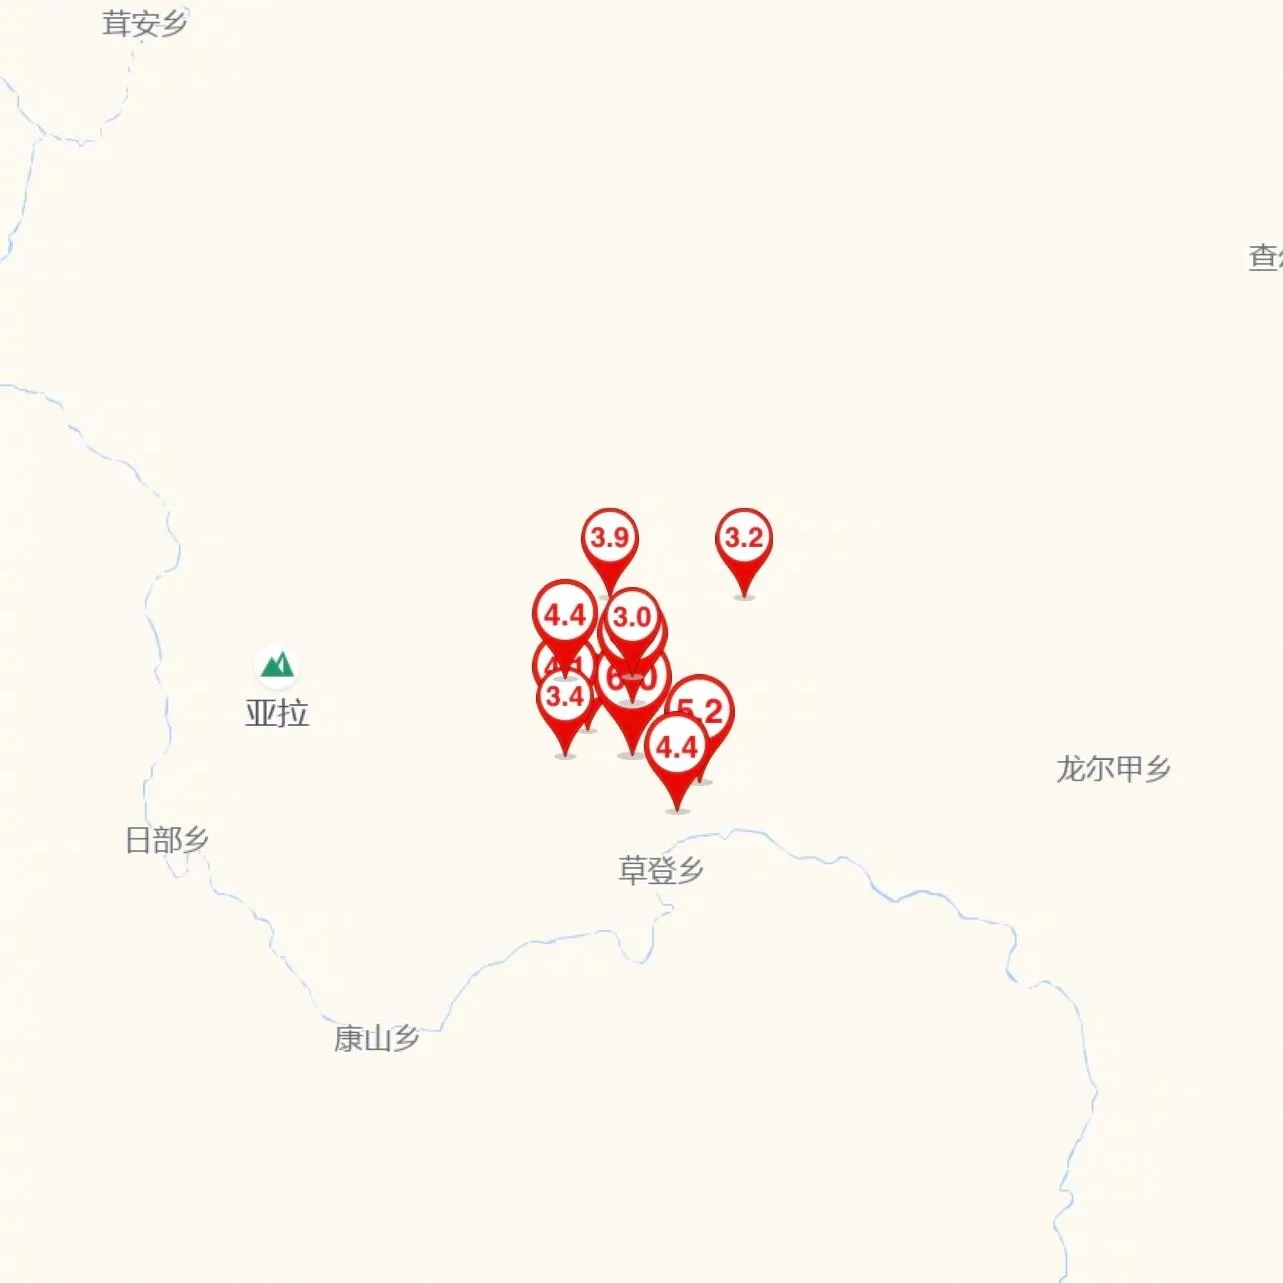 马尔康地震几次 四川省阿坝州马尔康市7小时发生3.0级以上地震10次